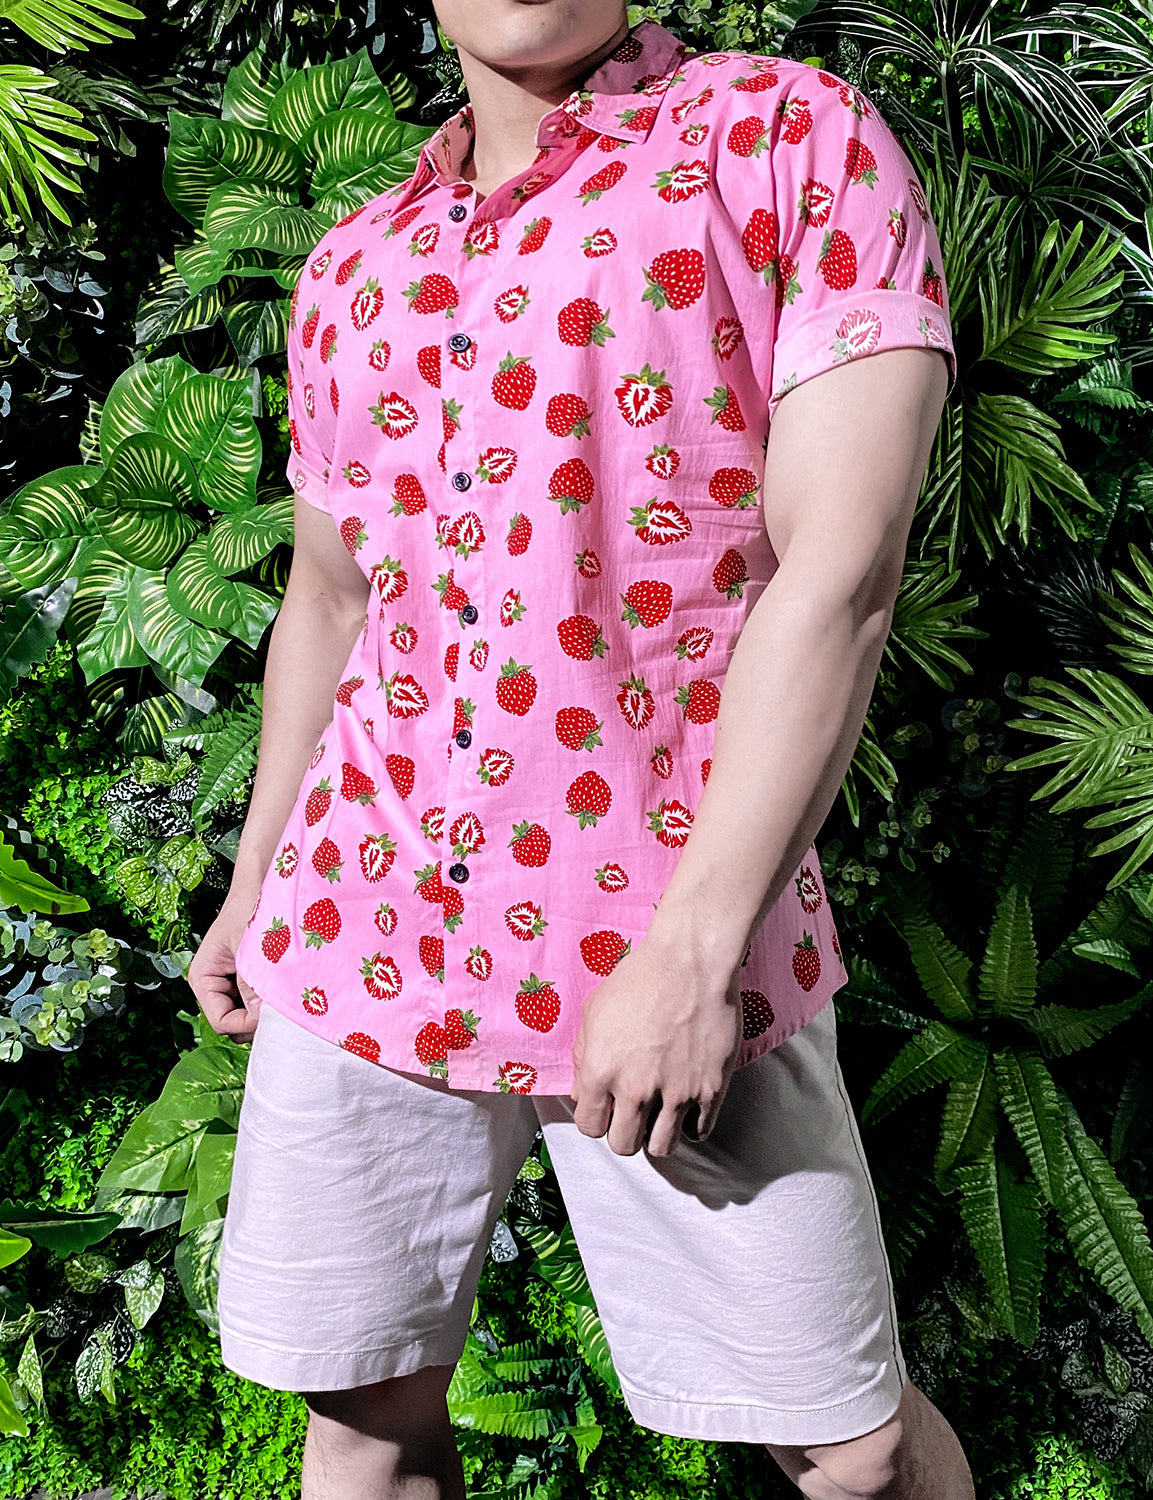 JOGAL Men's Cotton Button Down Short Sleeve Hawaiian Shirt (Strawberry)